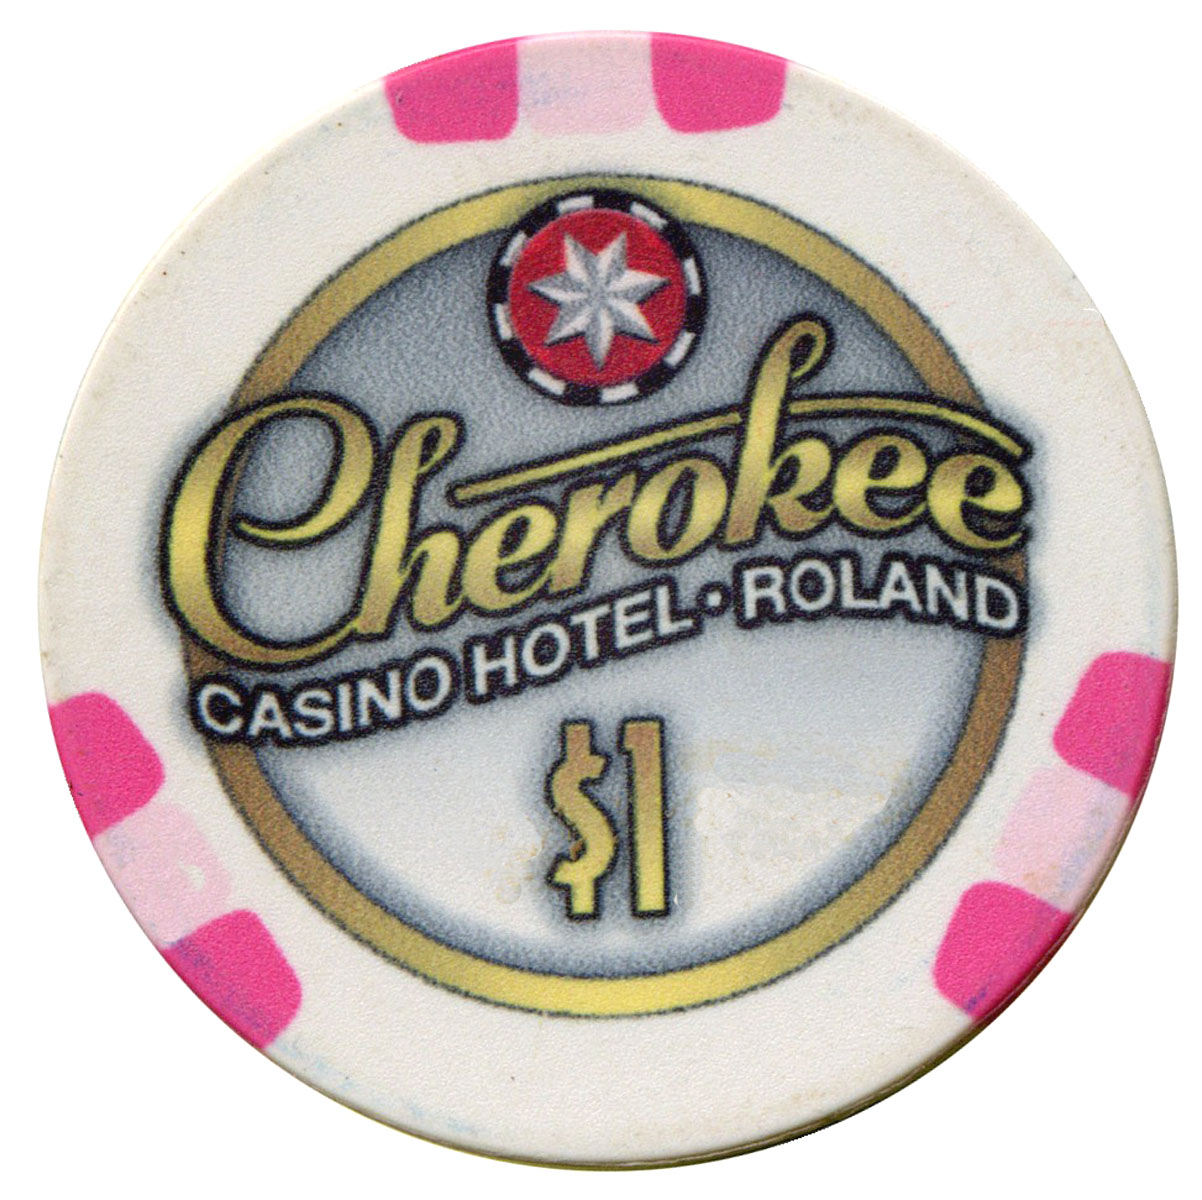 cherokee casino roland ok how much